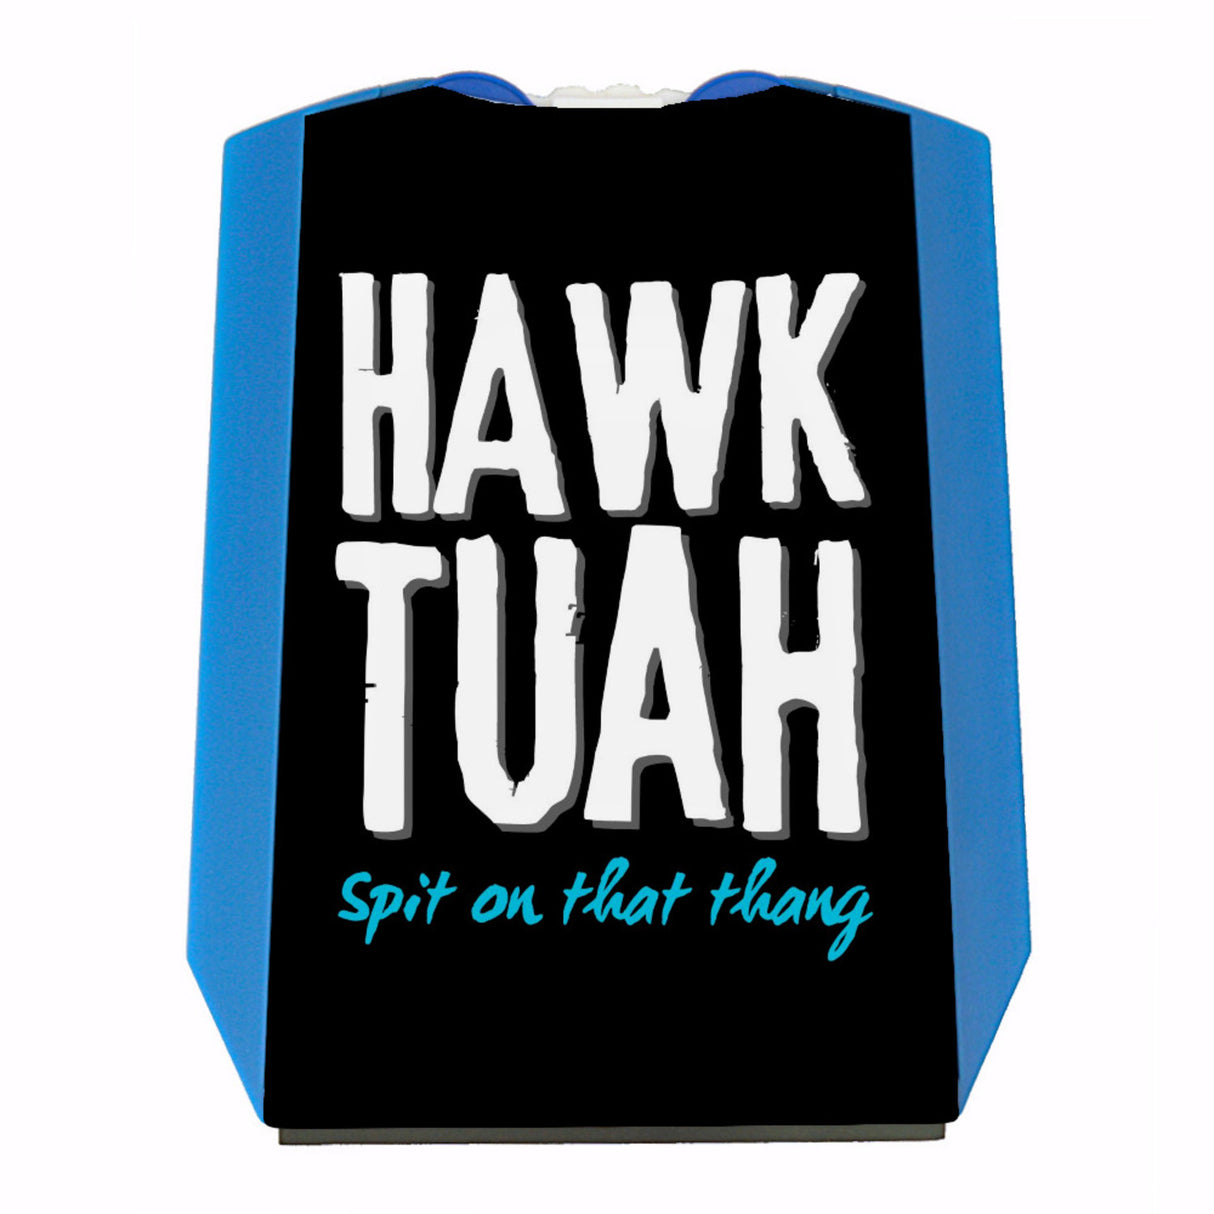 Hawk Tuah Parkscheibe mit Spruch Spit on that thang